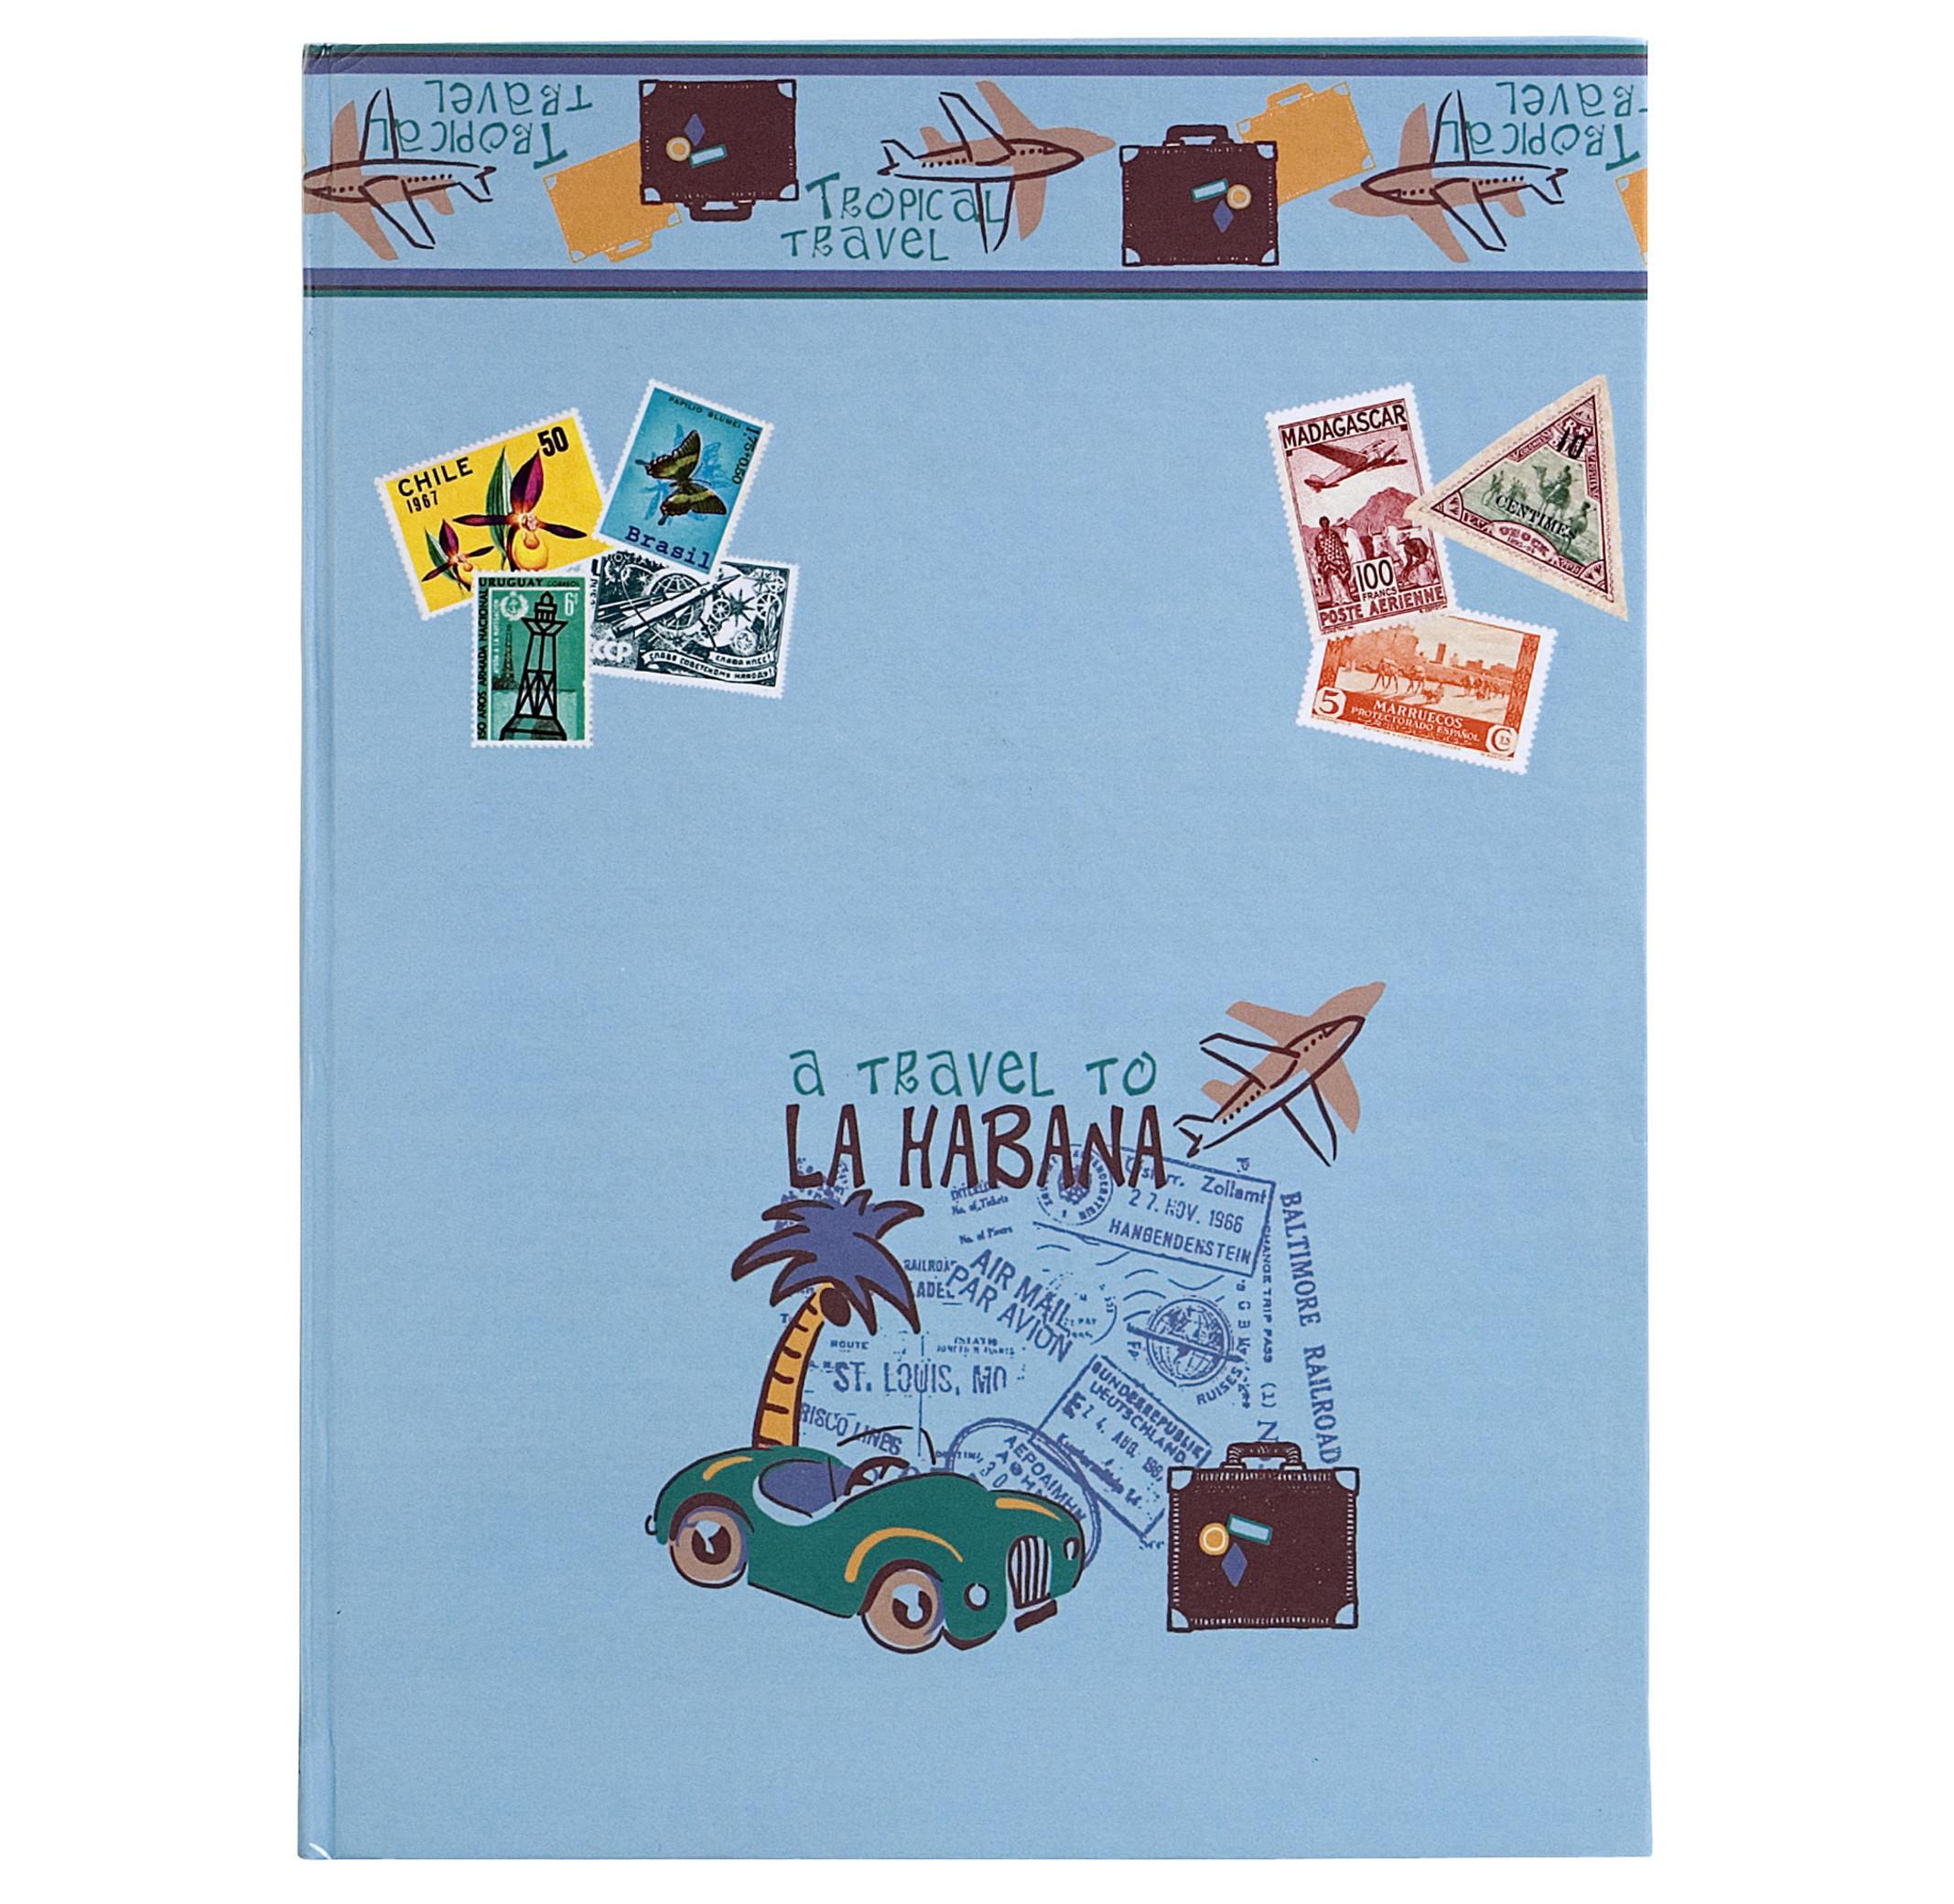 Exacompta Briefmarkenset Meine erste Kollektion: Air Mail, 22,5x30cm - x 4  